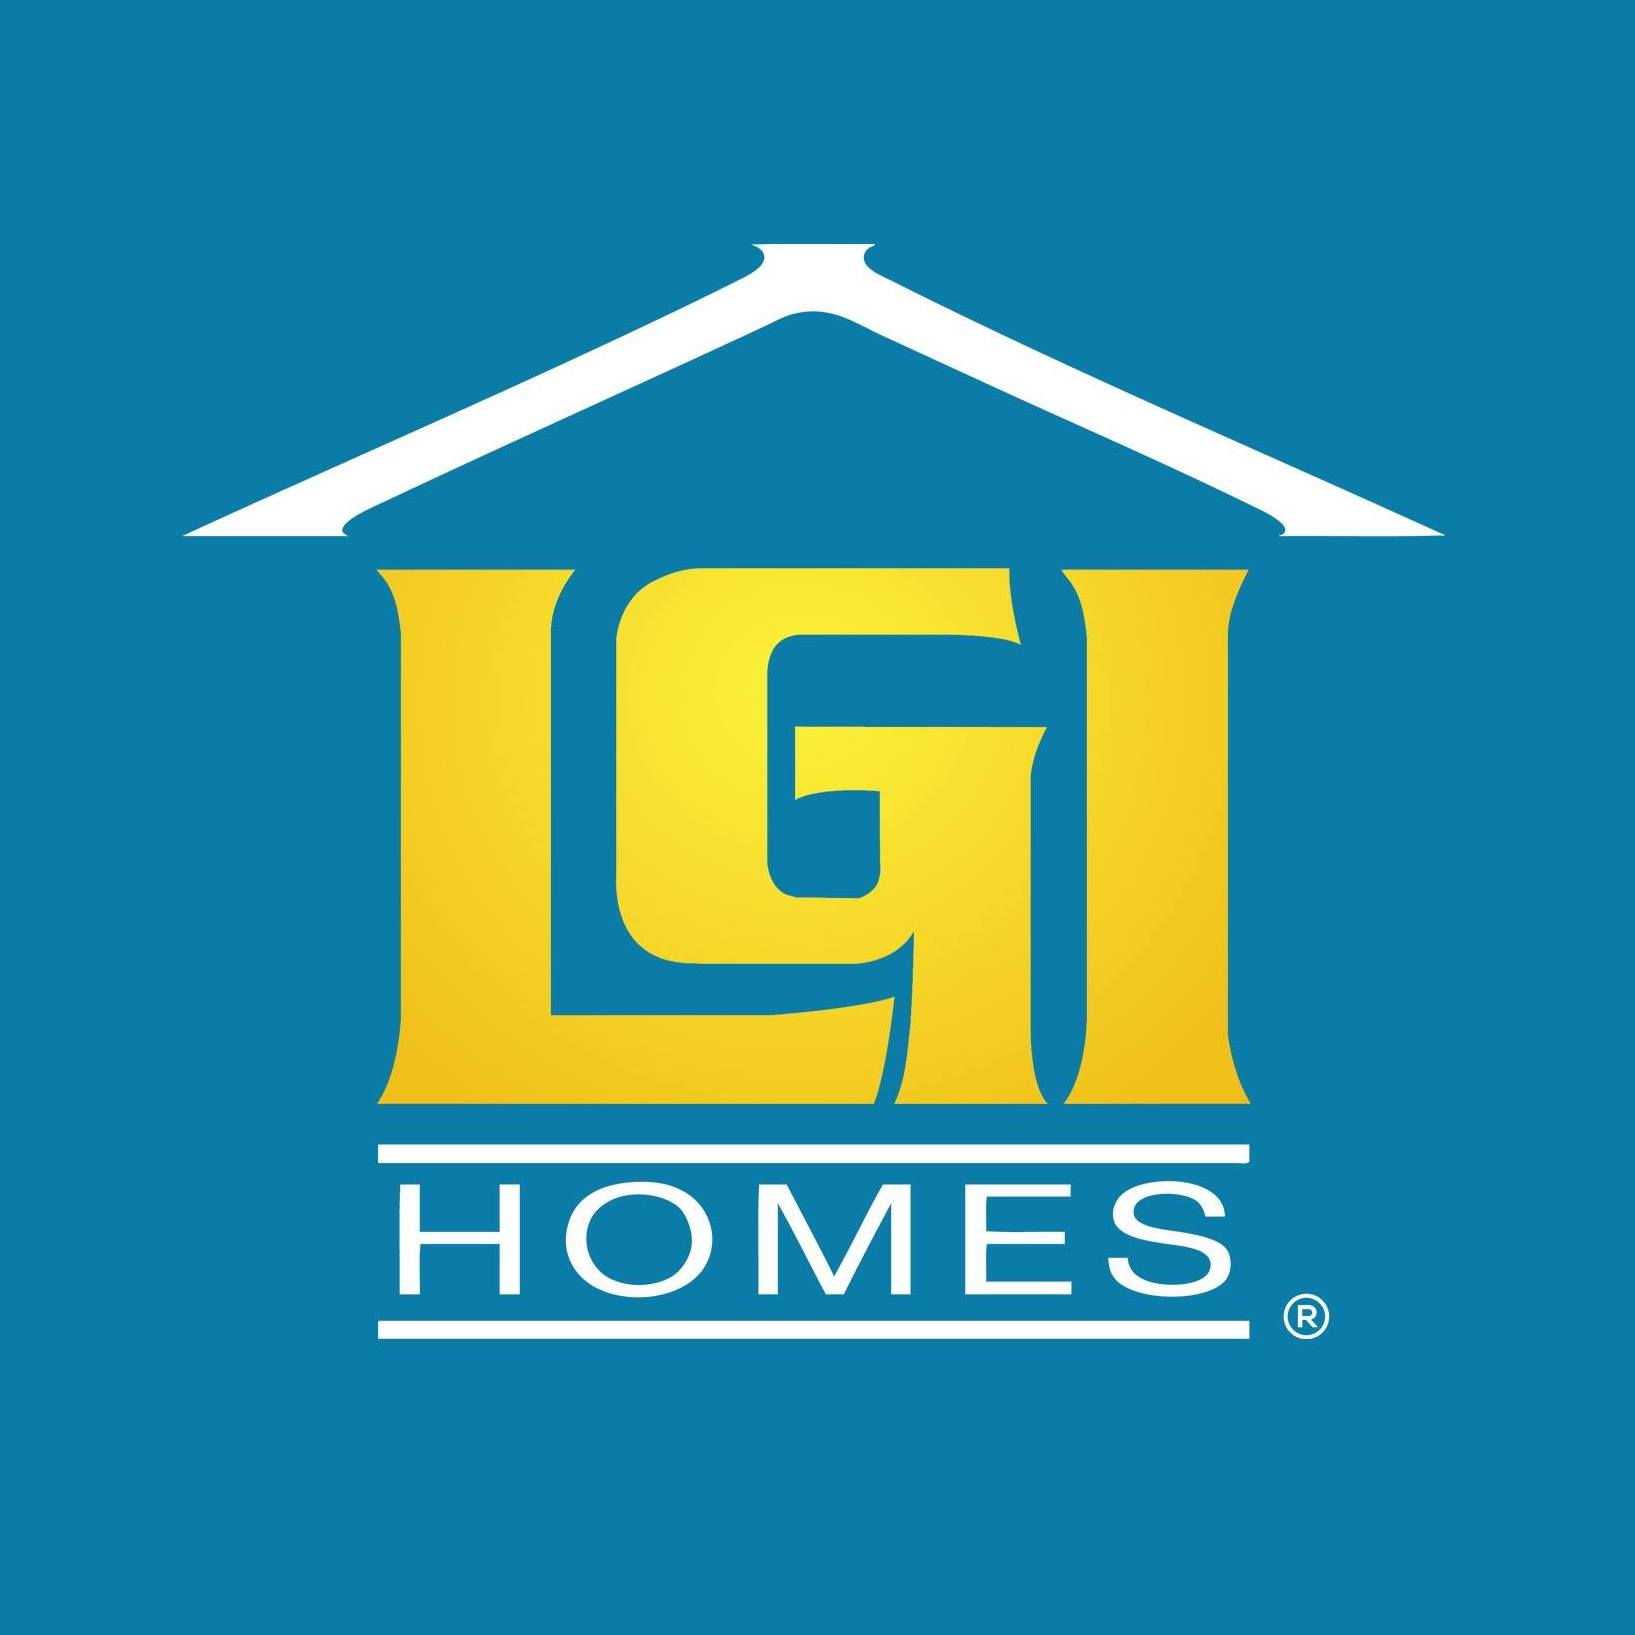 Company logo of LGI Homes